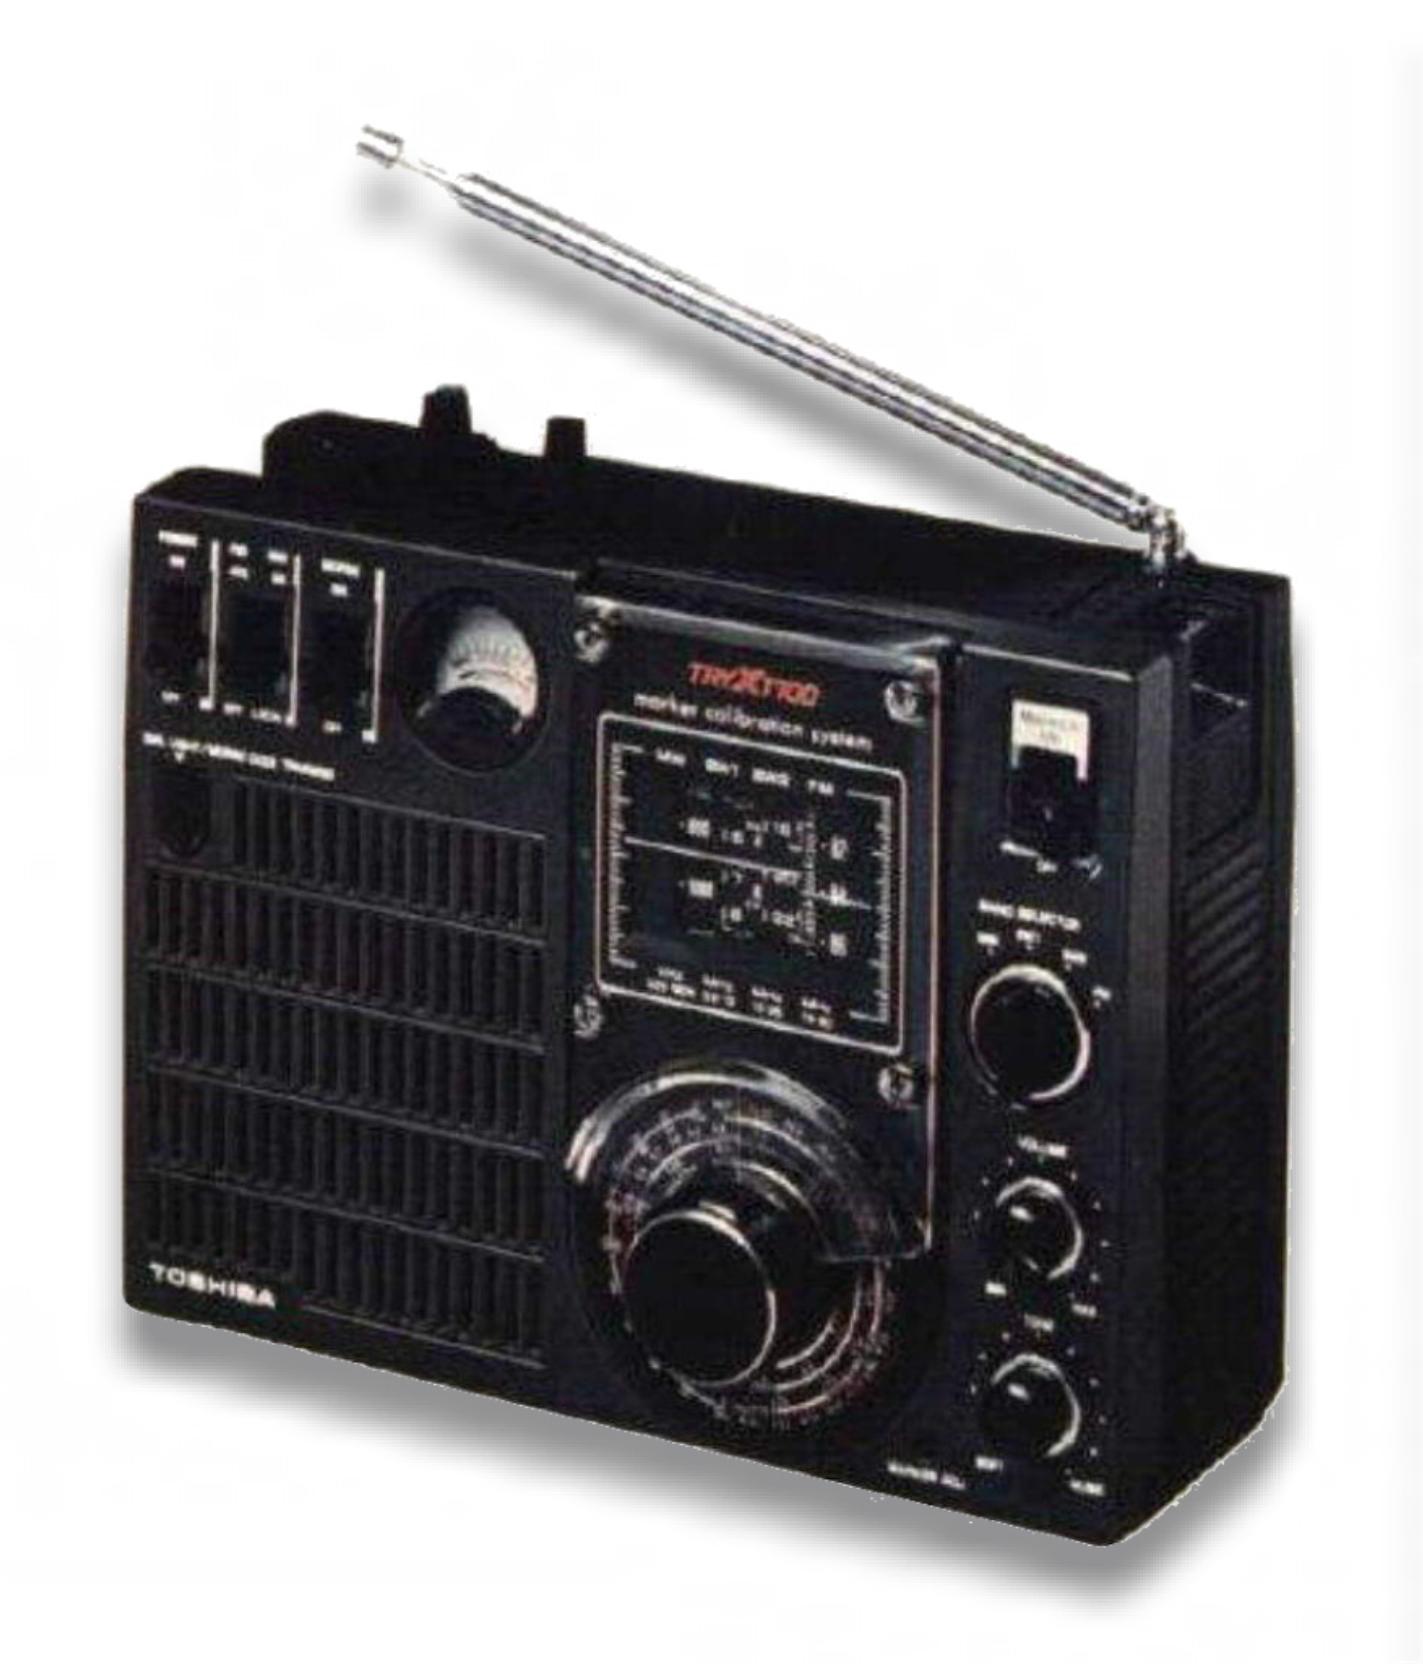 TRYX-1700(RP-1700F): BCLラジオネット